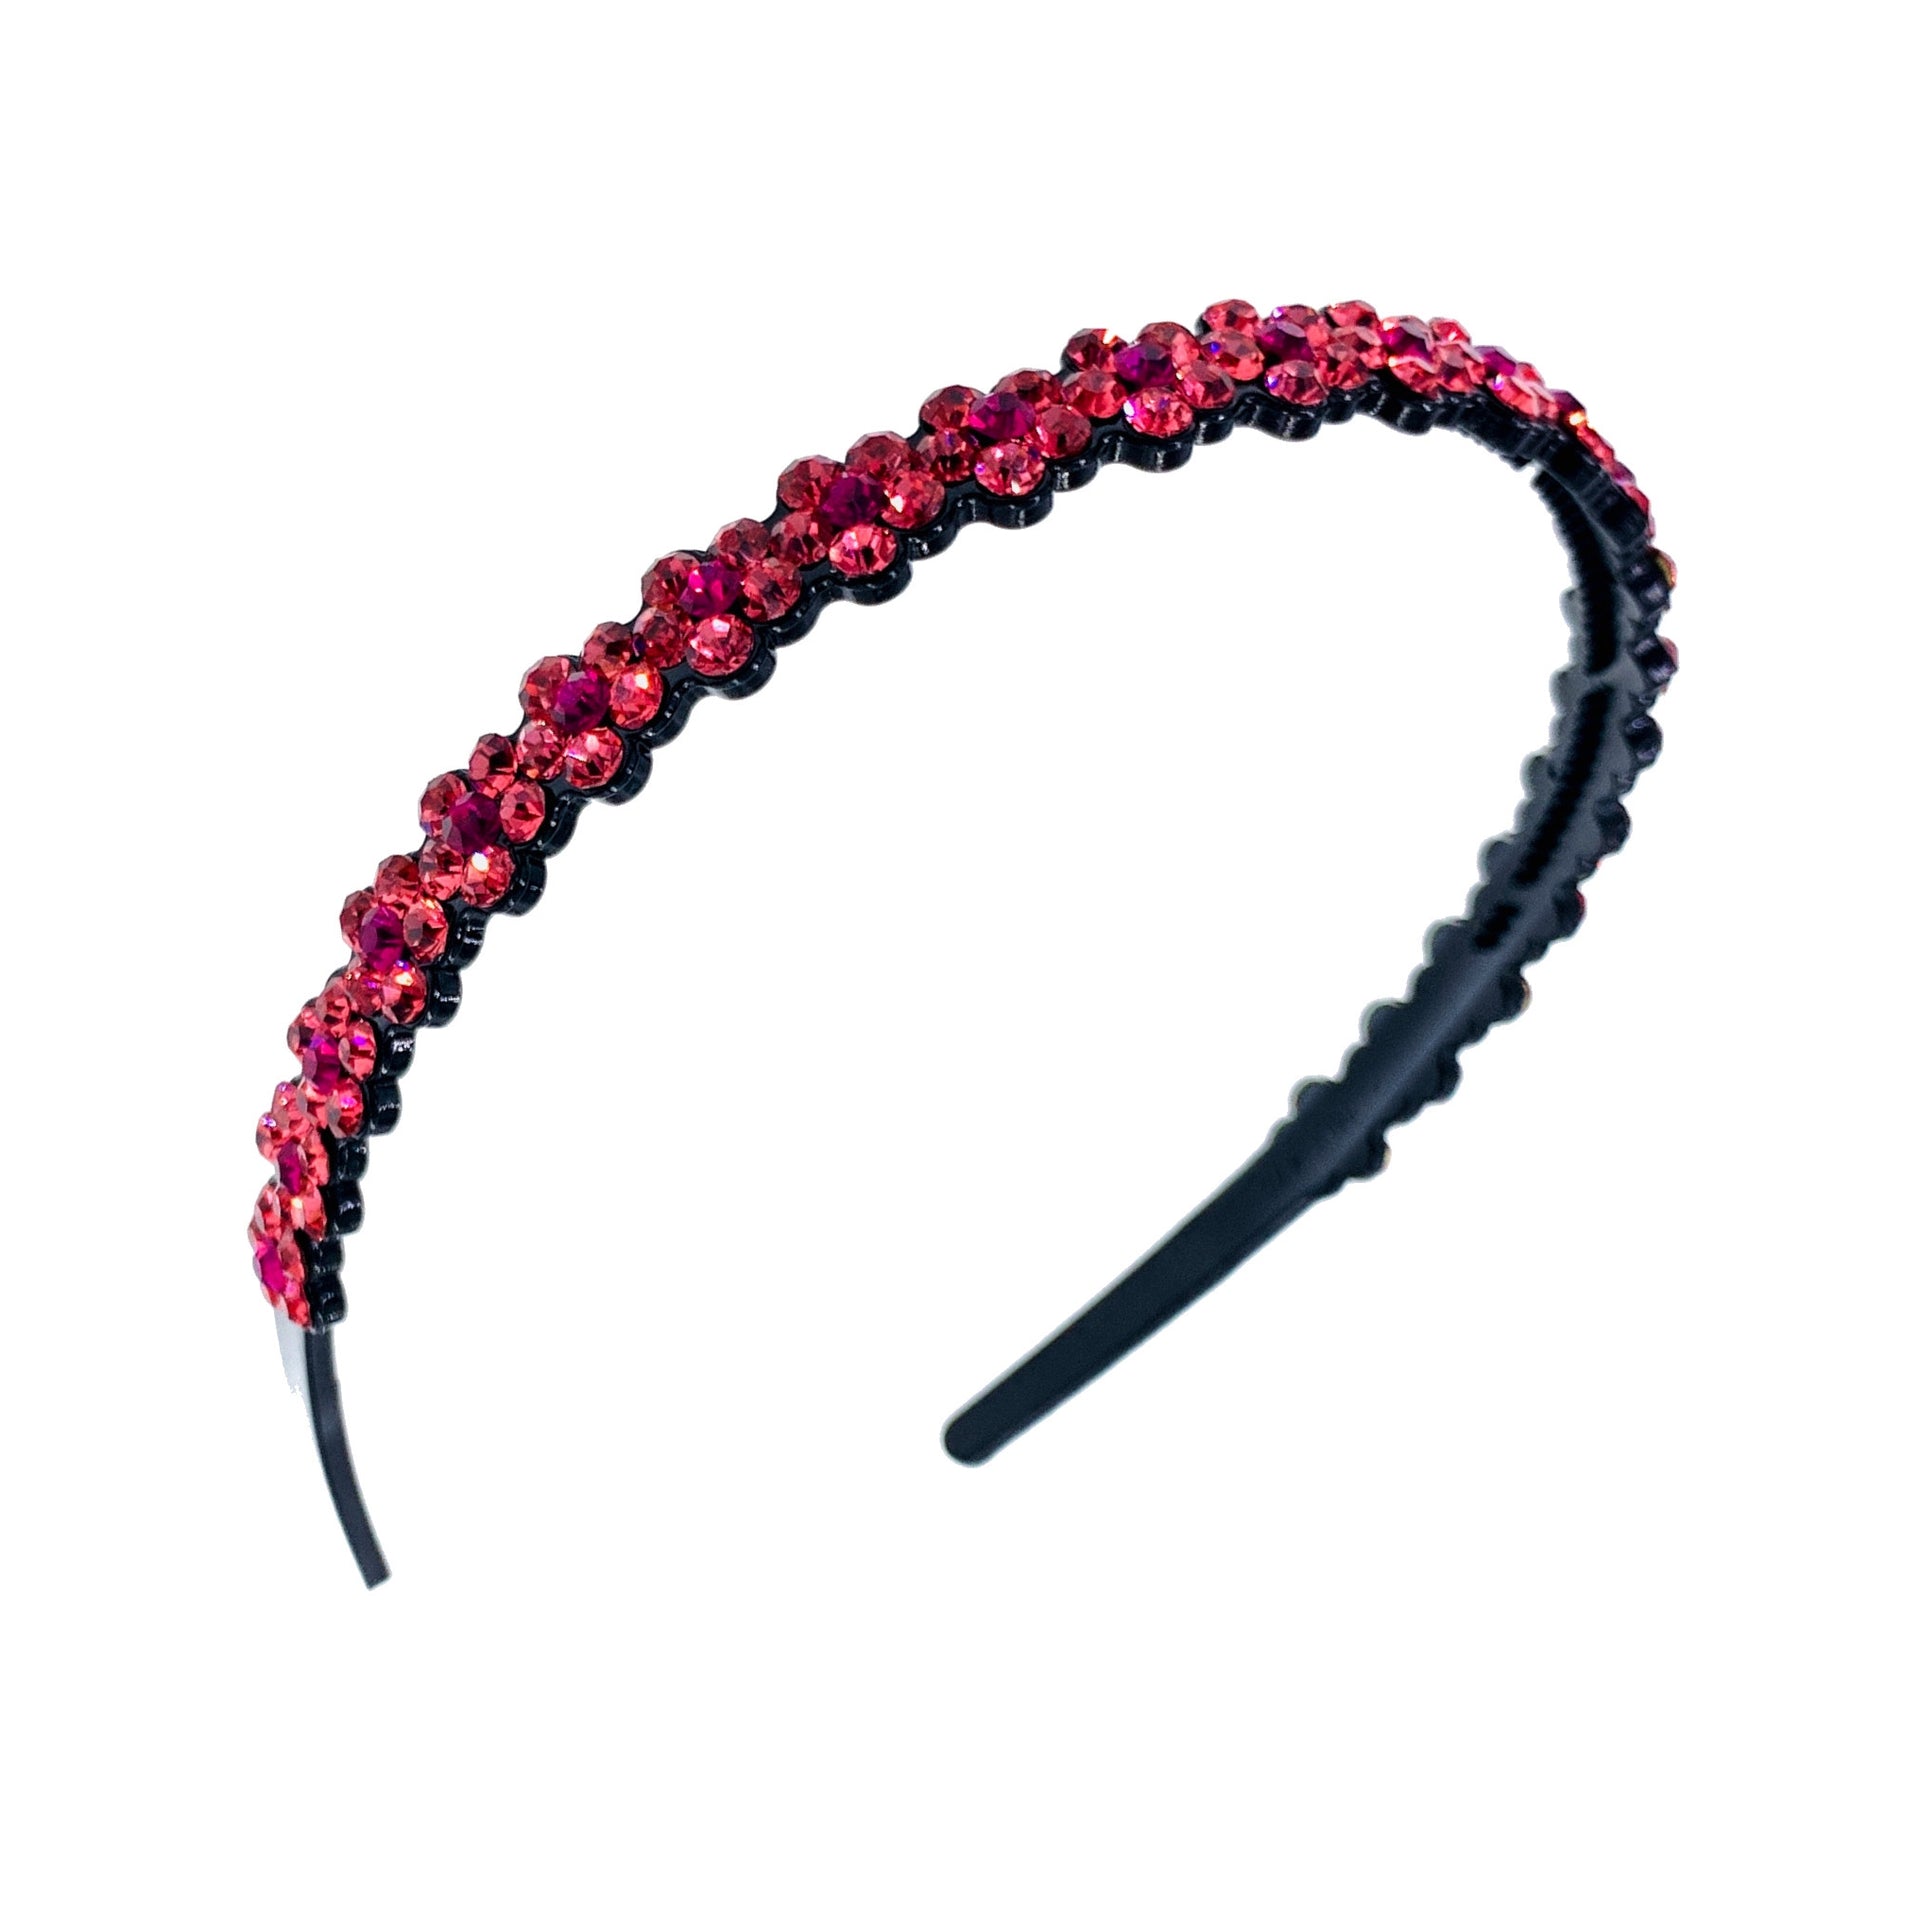 Bettina Handmade Flowers Acrylic Simple Rhinestone Crystals Headband Hairband Prom Party Gift, Headband - MOGHANT